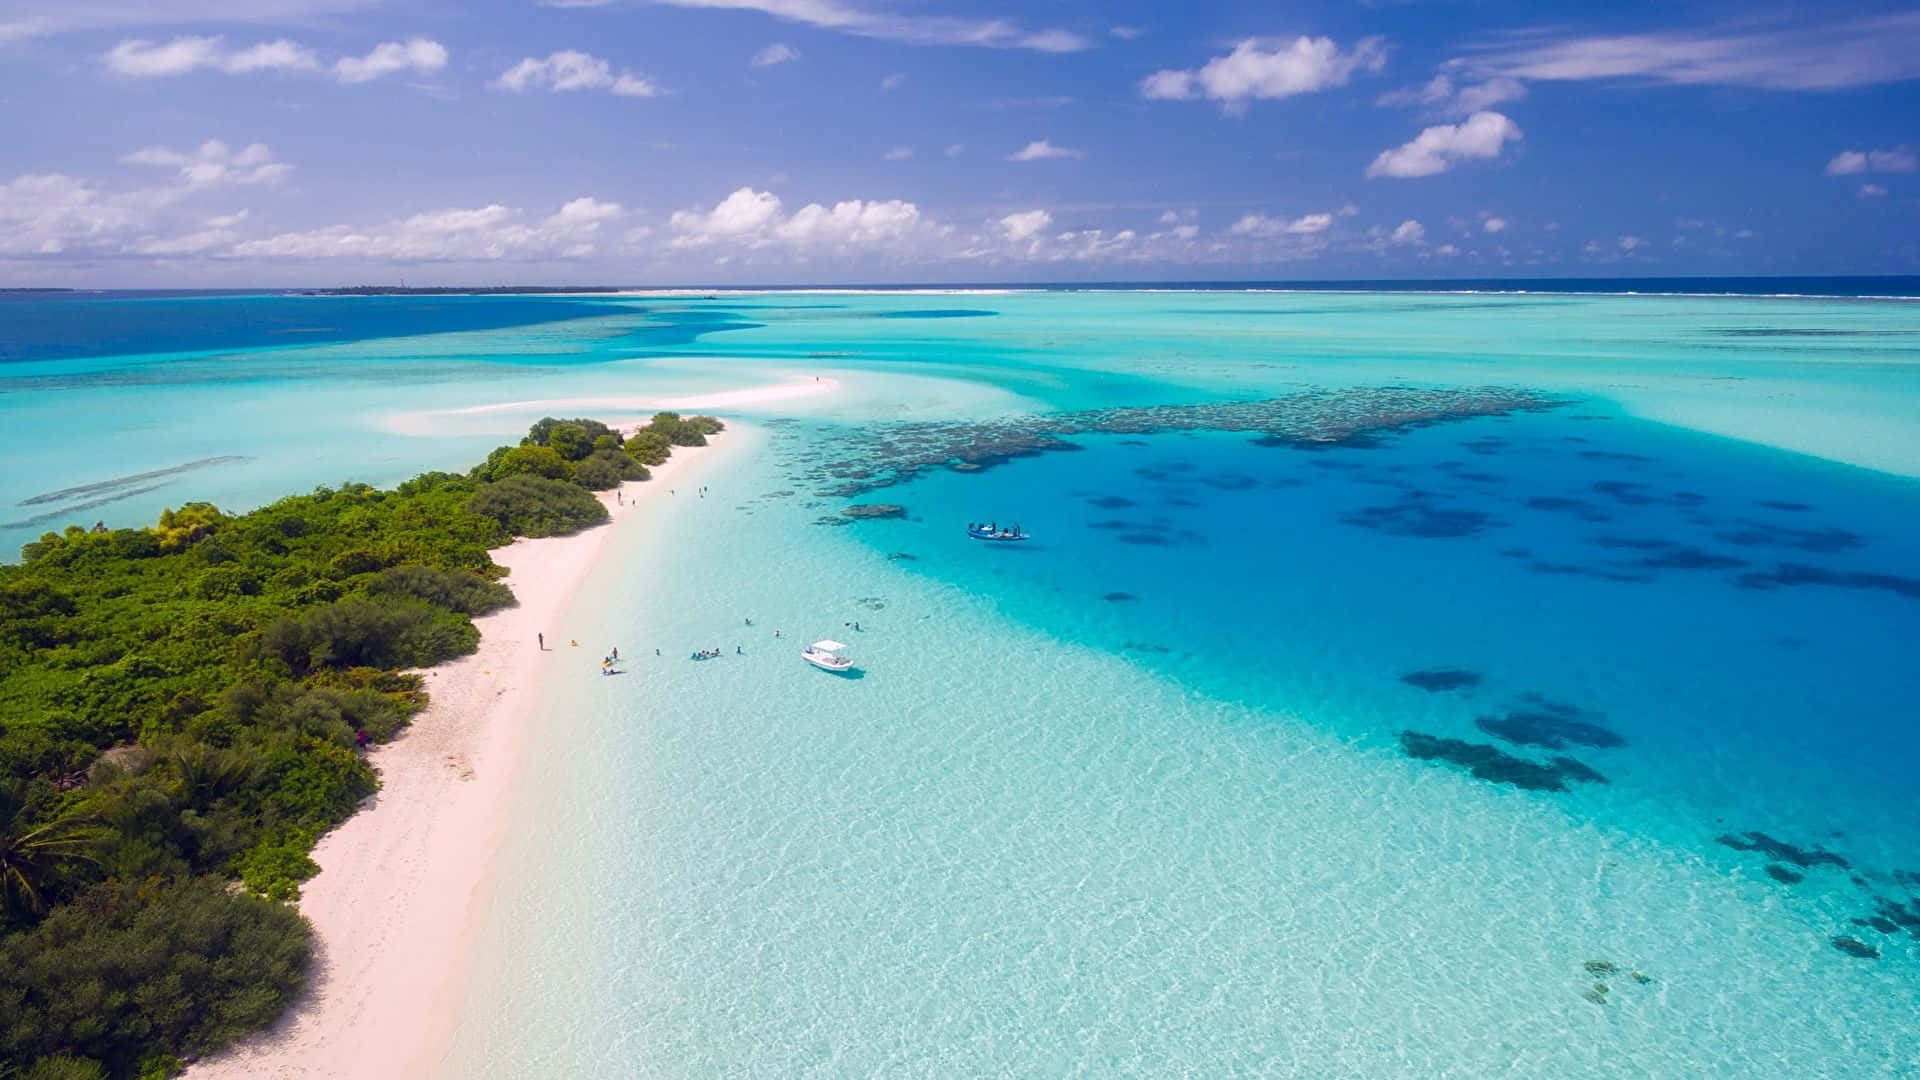 Fondode Pantalla De Maldivas En La Playa En Resolución 720p.